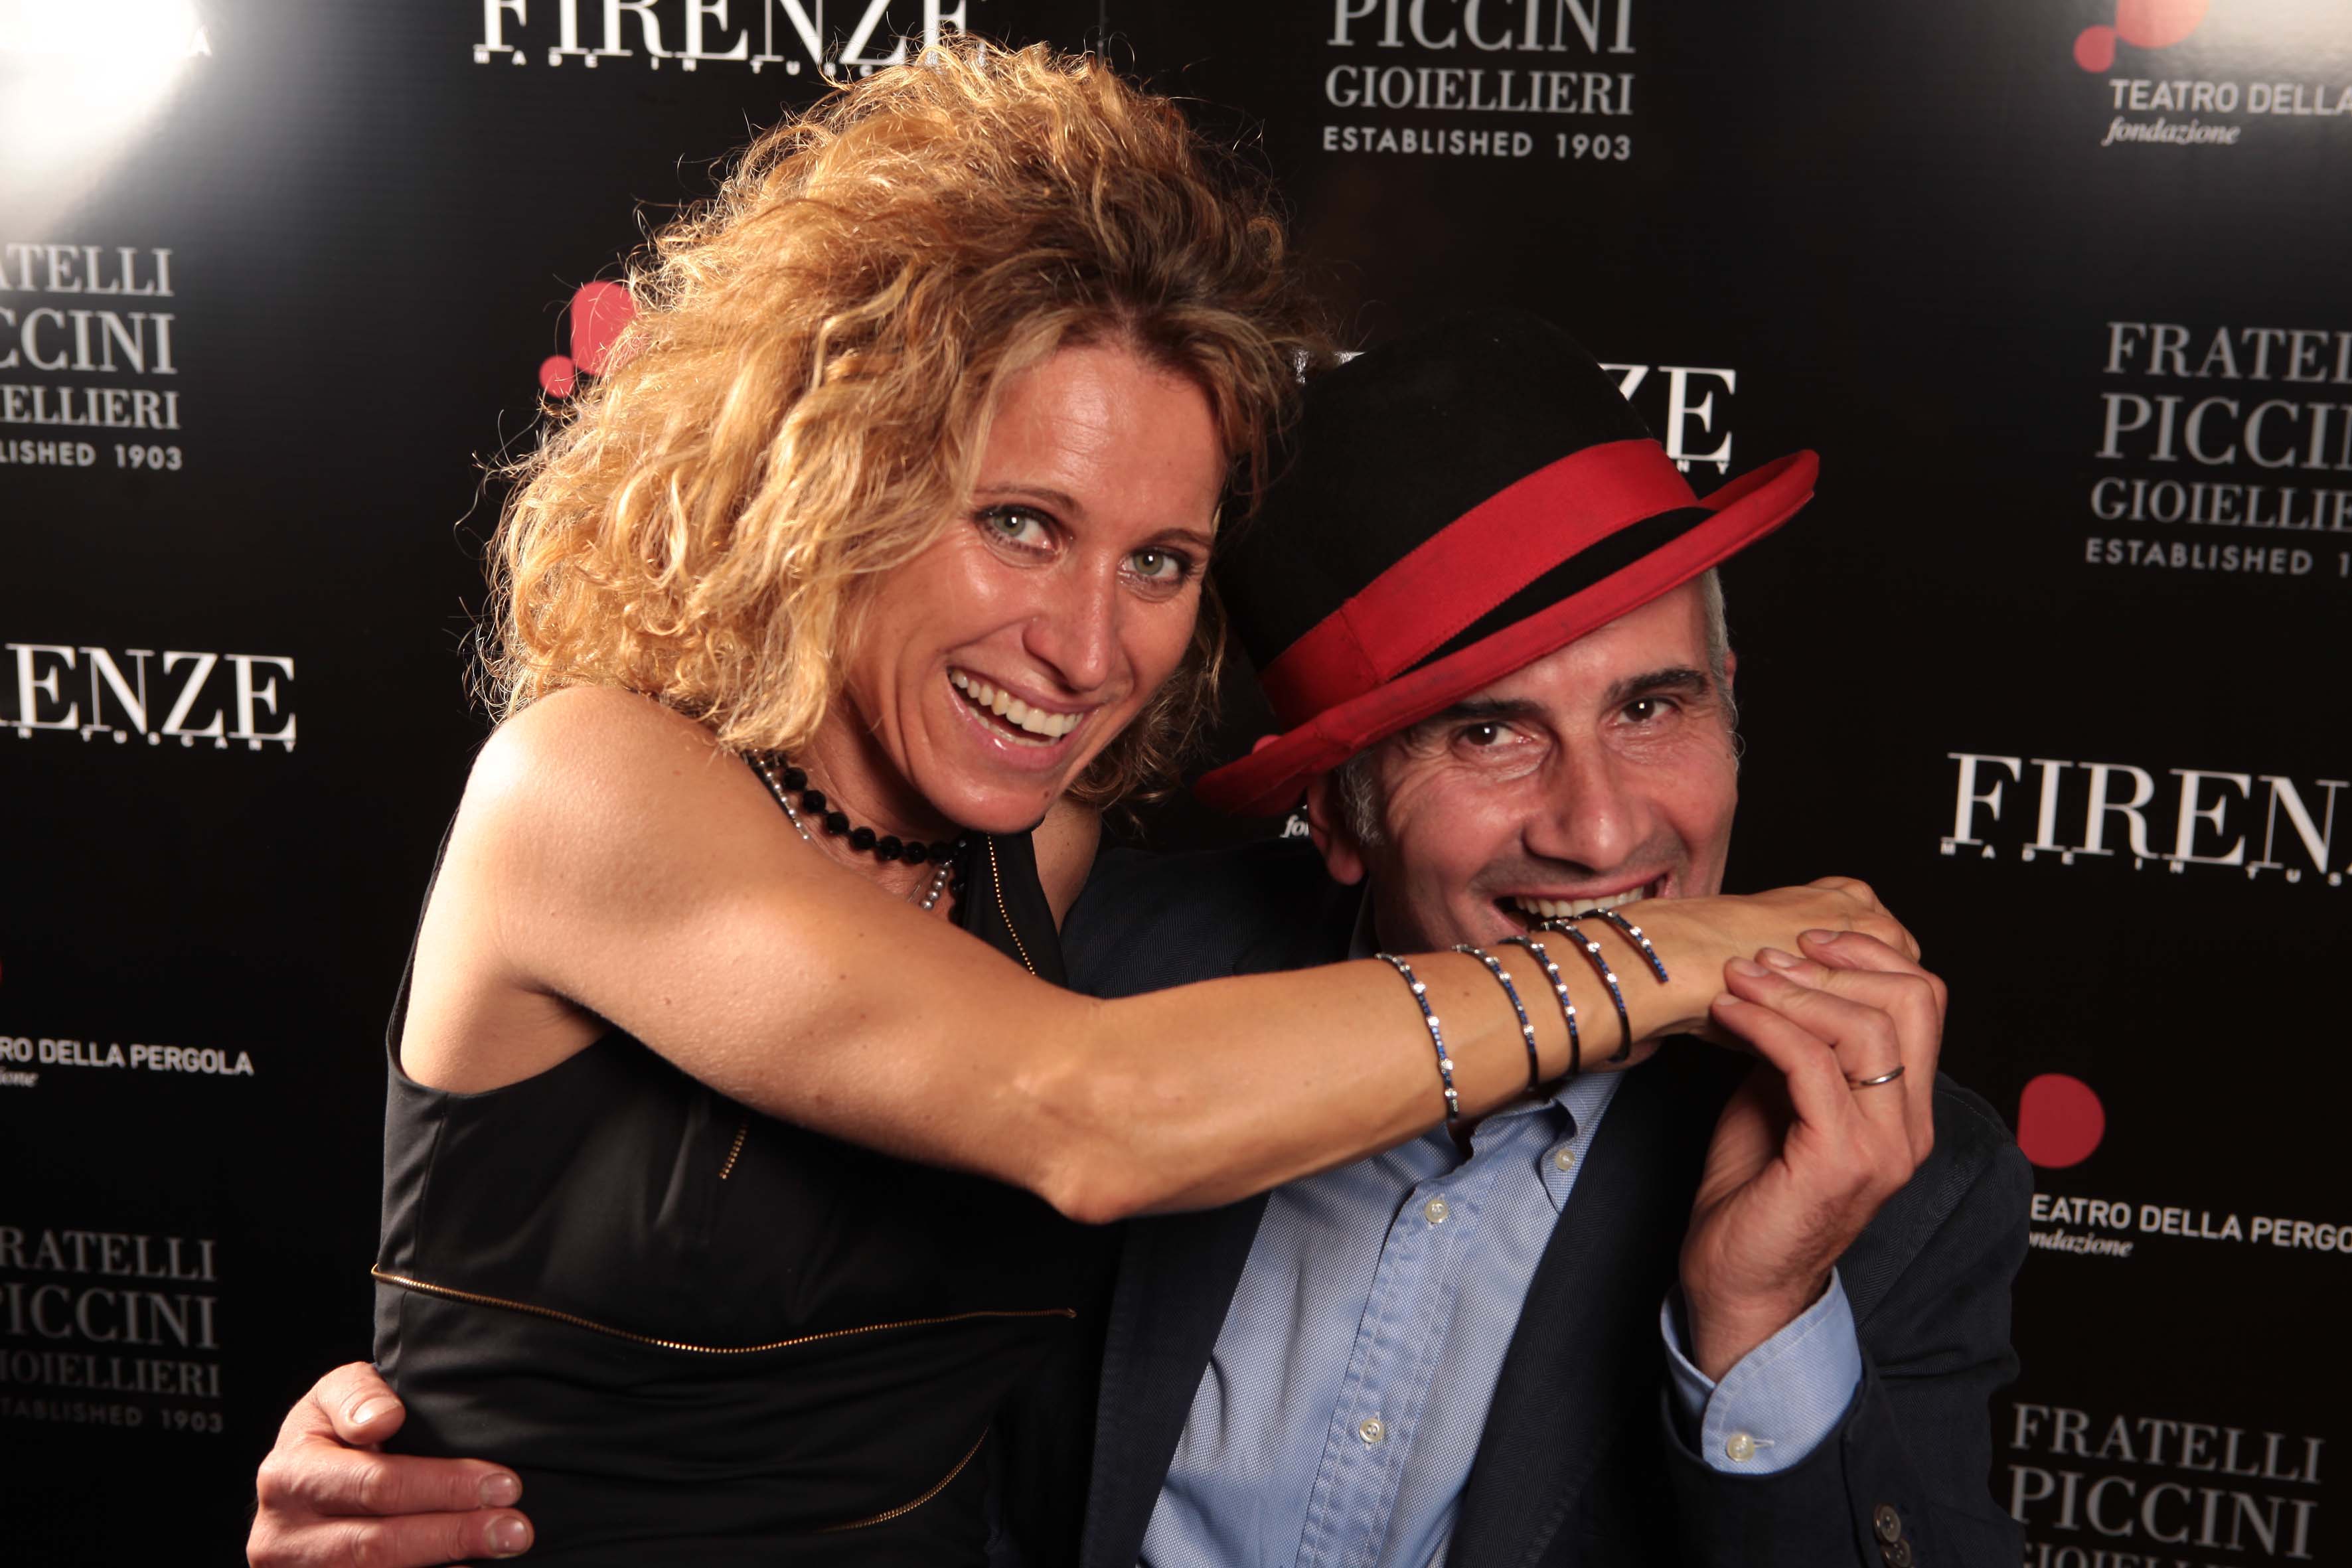 Pressphoto- Firenze Festa Firenze Magazine alla Pergola nella foto: 
Serenella Cappellini and Rossano Nuvoli